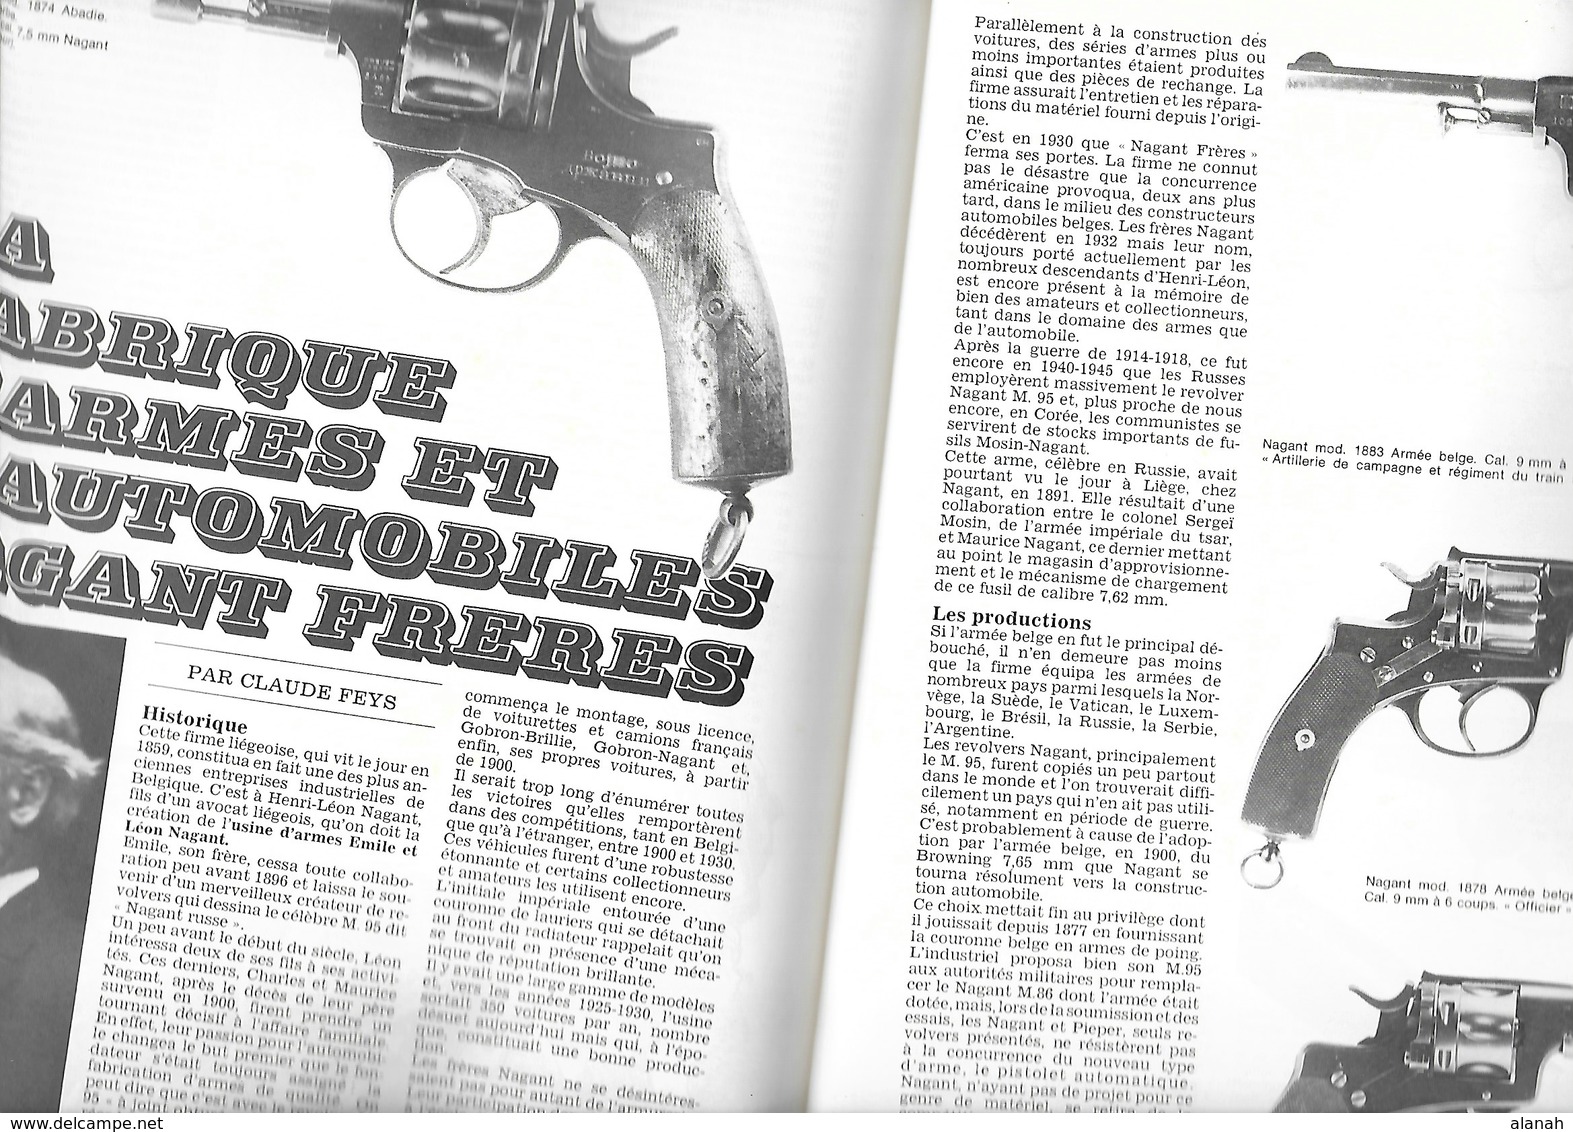 1eré Edition 1974 Annuaire Des Armes Guillaume Tell 432 Pages + Couverture - France